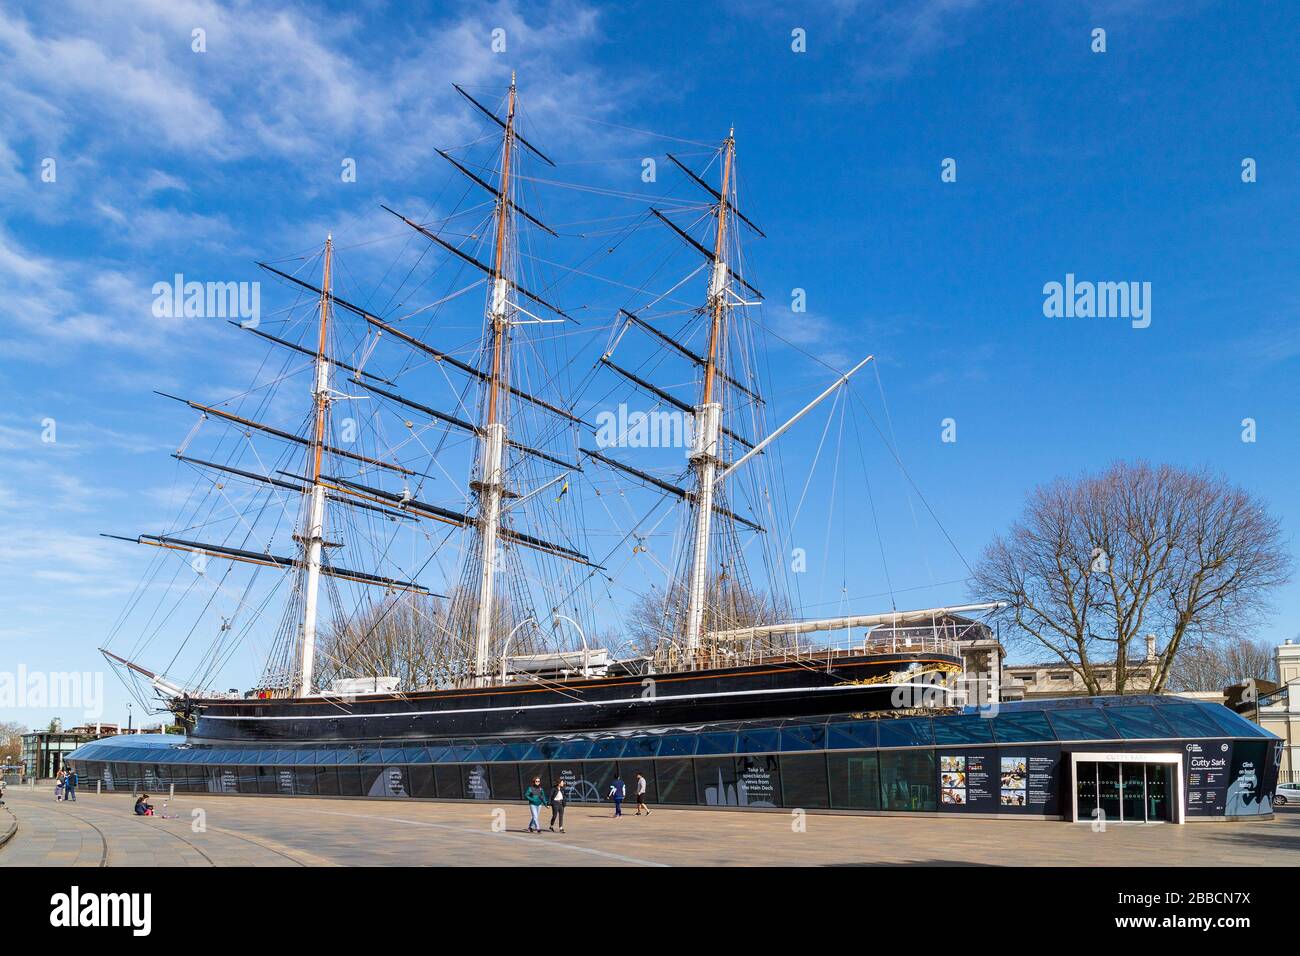 LONDRA, Regno Unito - 21ST MARZO 2020: L'esterno del museo Cutty Sark a Greenwich. Mostrare la nave e alcune persone. Foto Stock